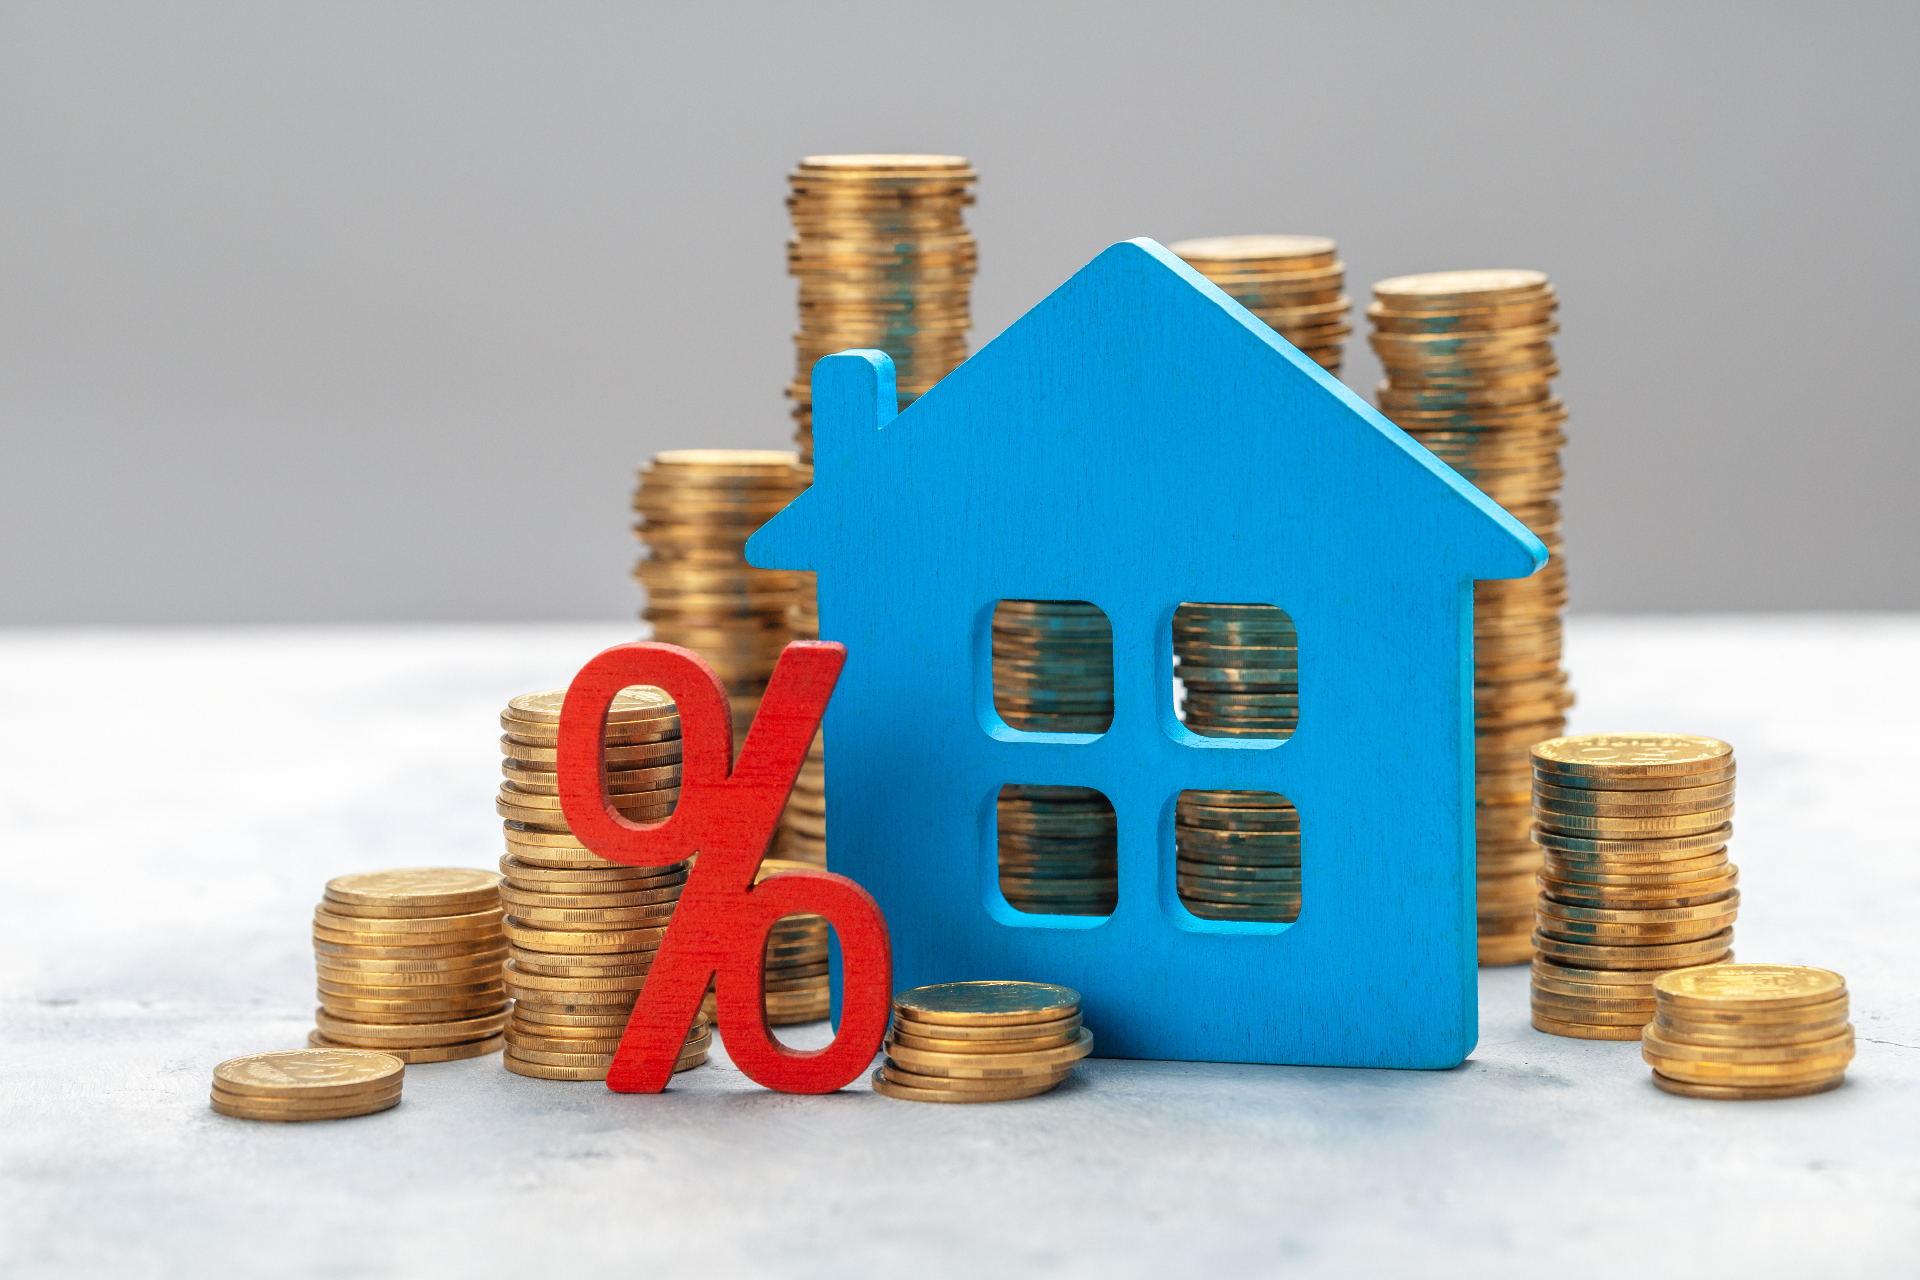 Главный плюс ипотеки с нулевым взносом для заемщика &mdash; не нужно копить деньги на покупку жилья, можно быстрее выйти на сделку и зафиксировать его стоимость